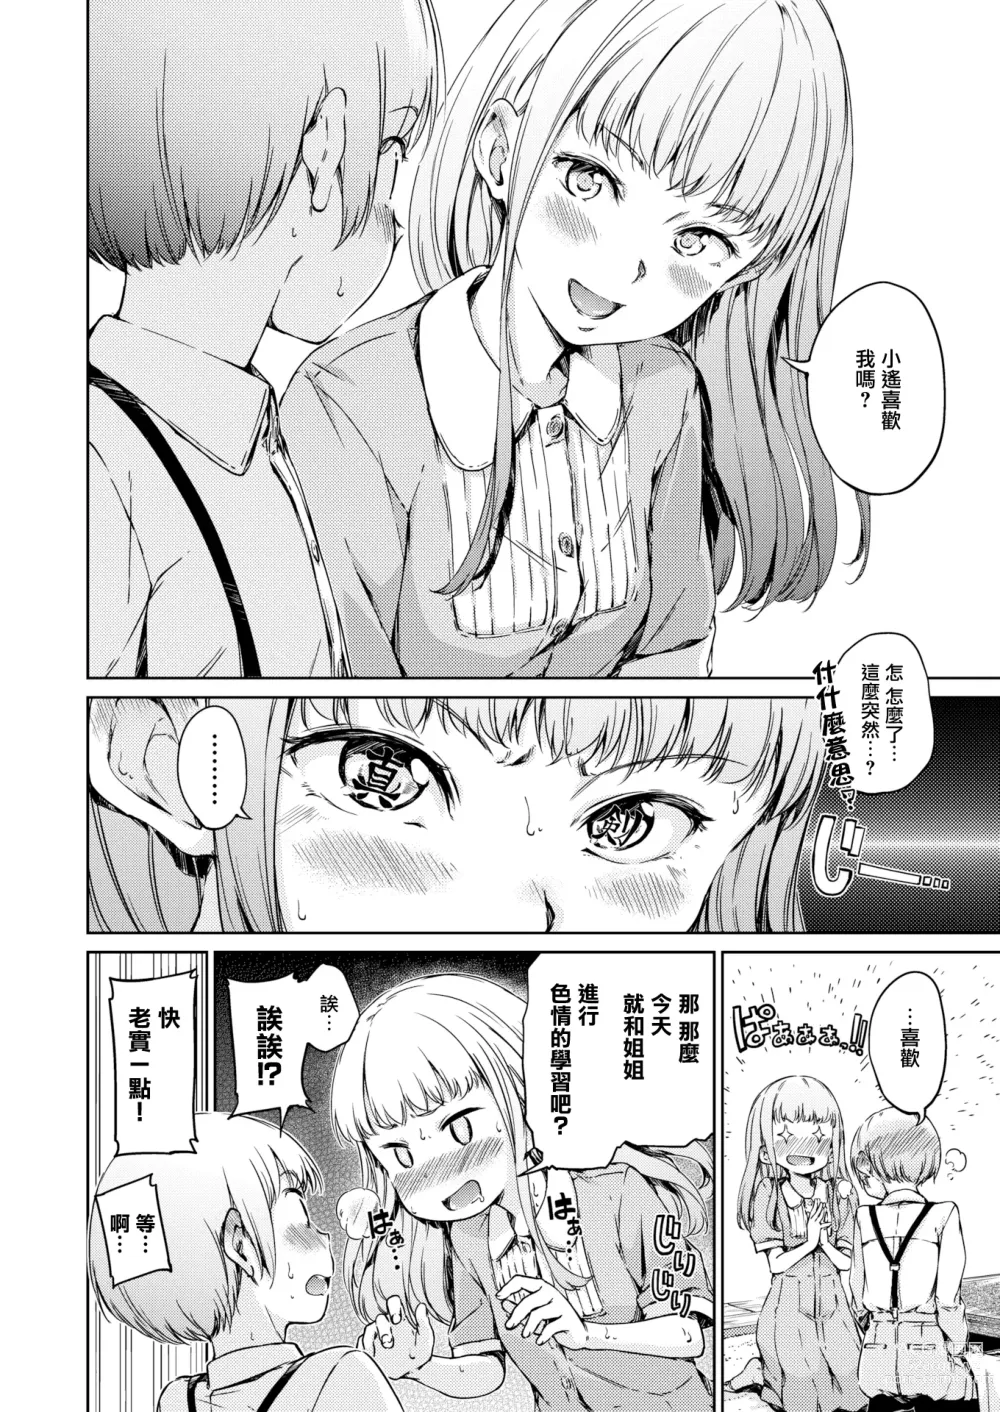 Page 5 of manga Chuu ni Uita Mama no Kokoro